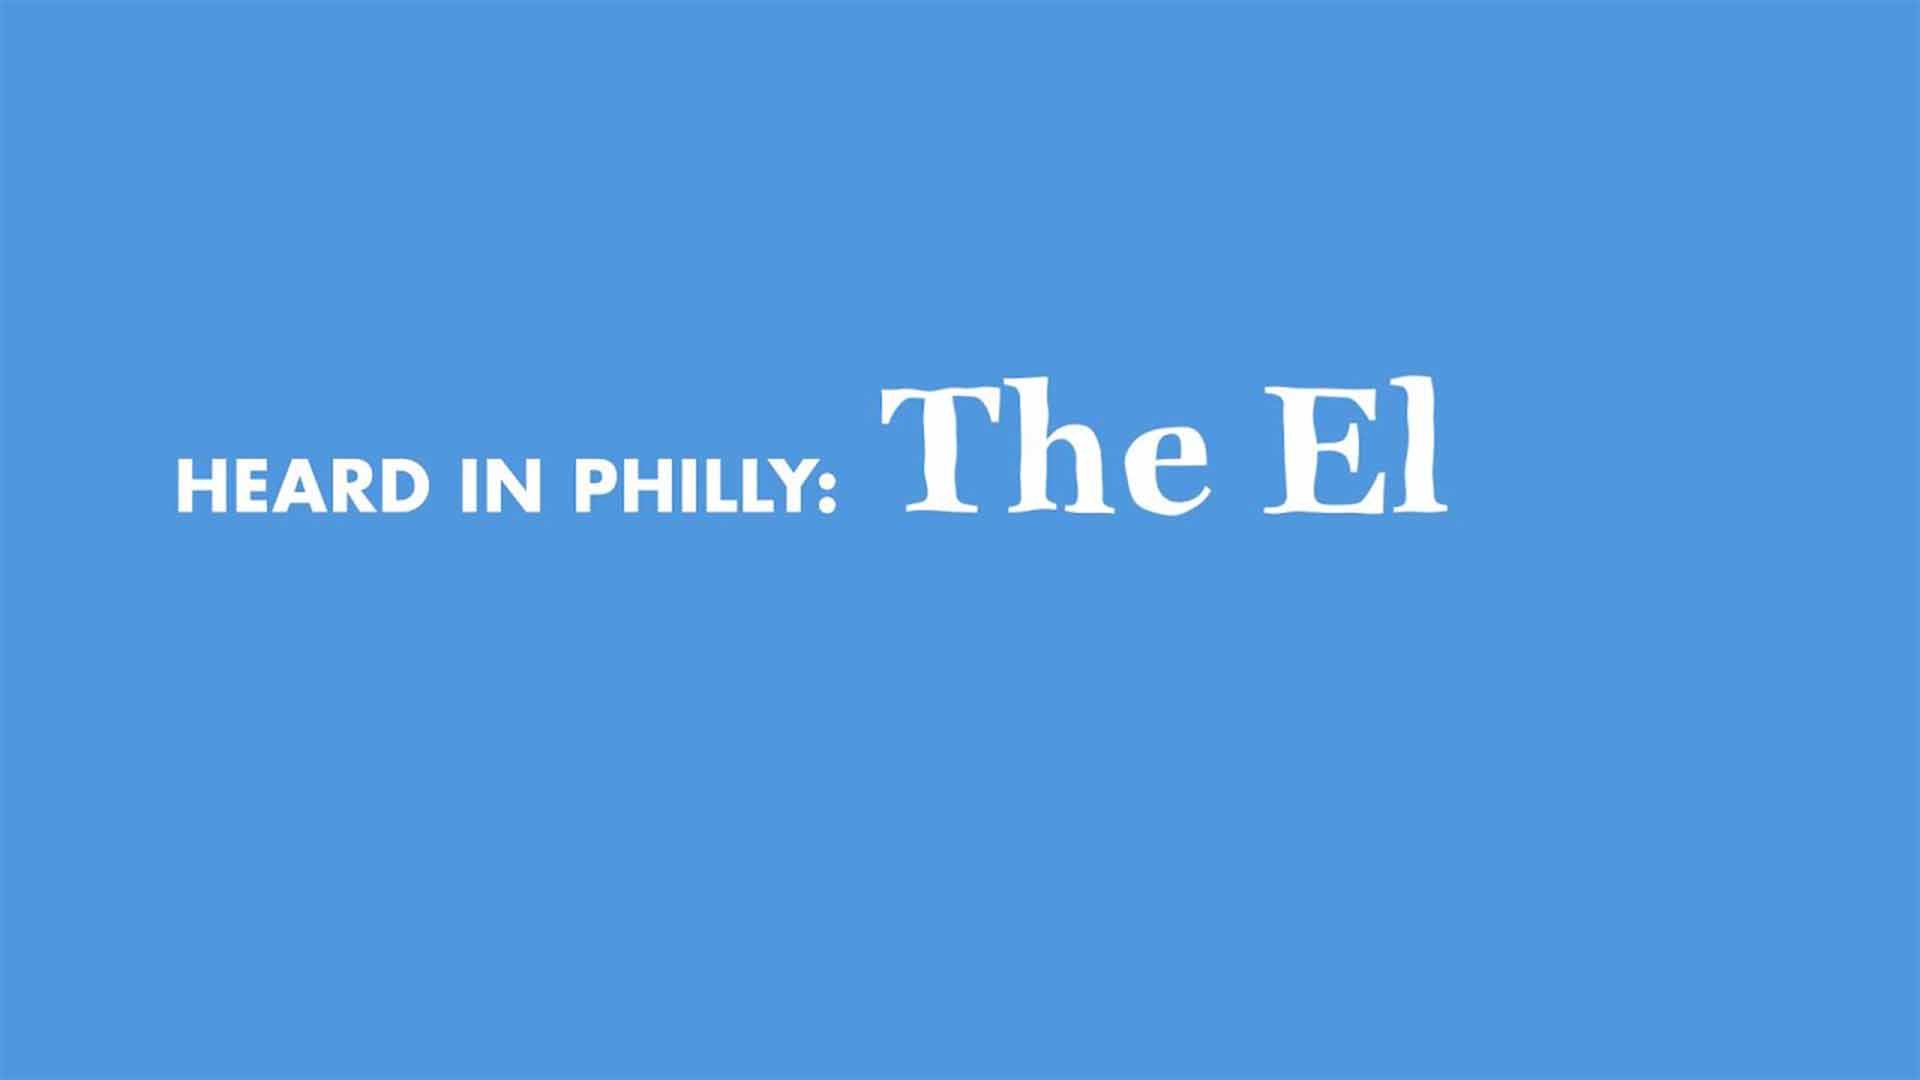 Heard in Philly: The El